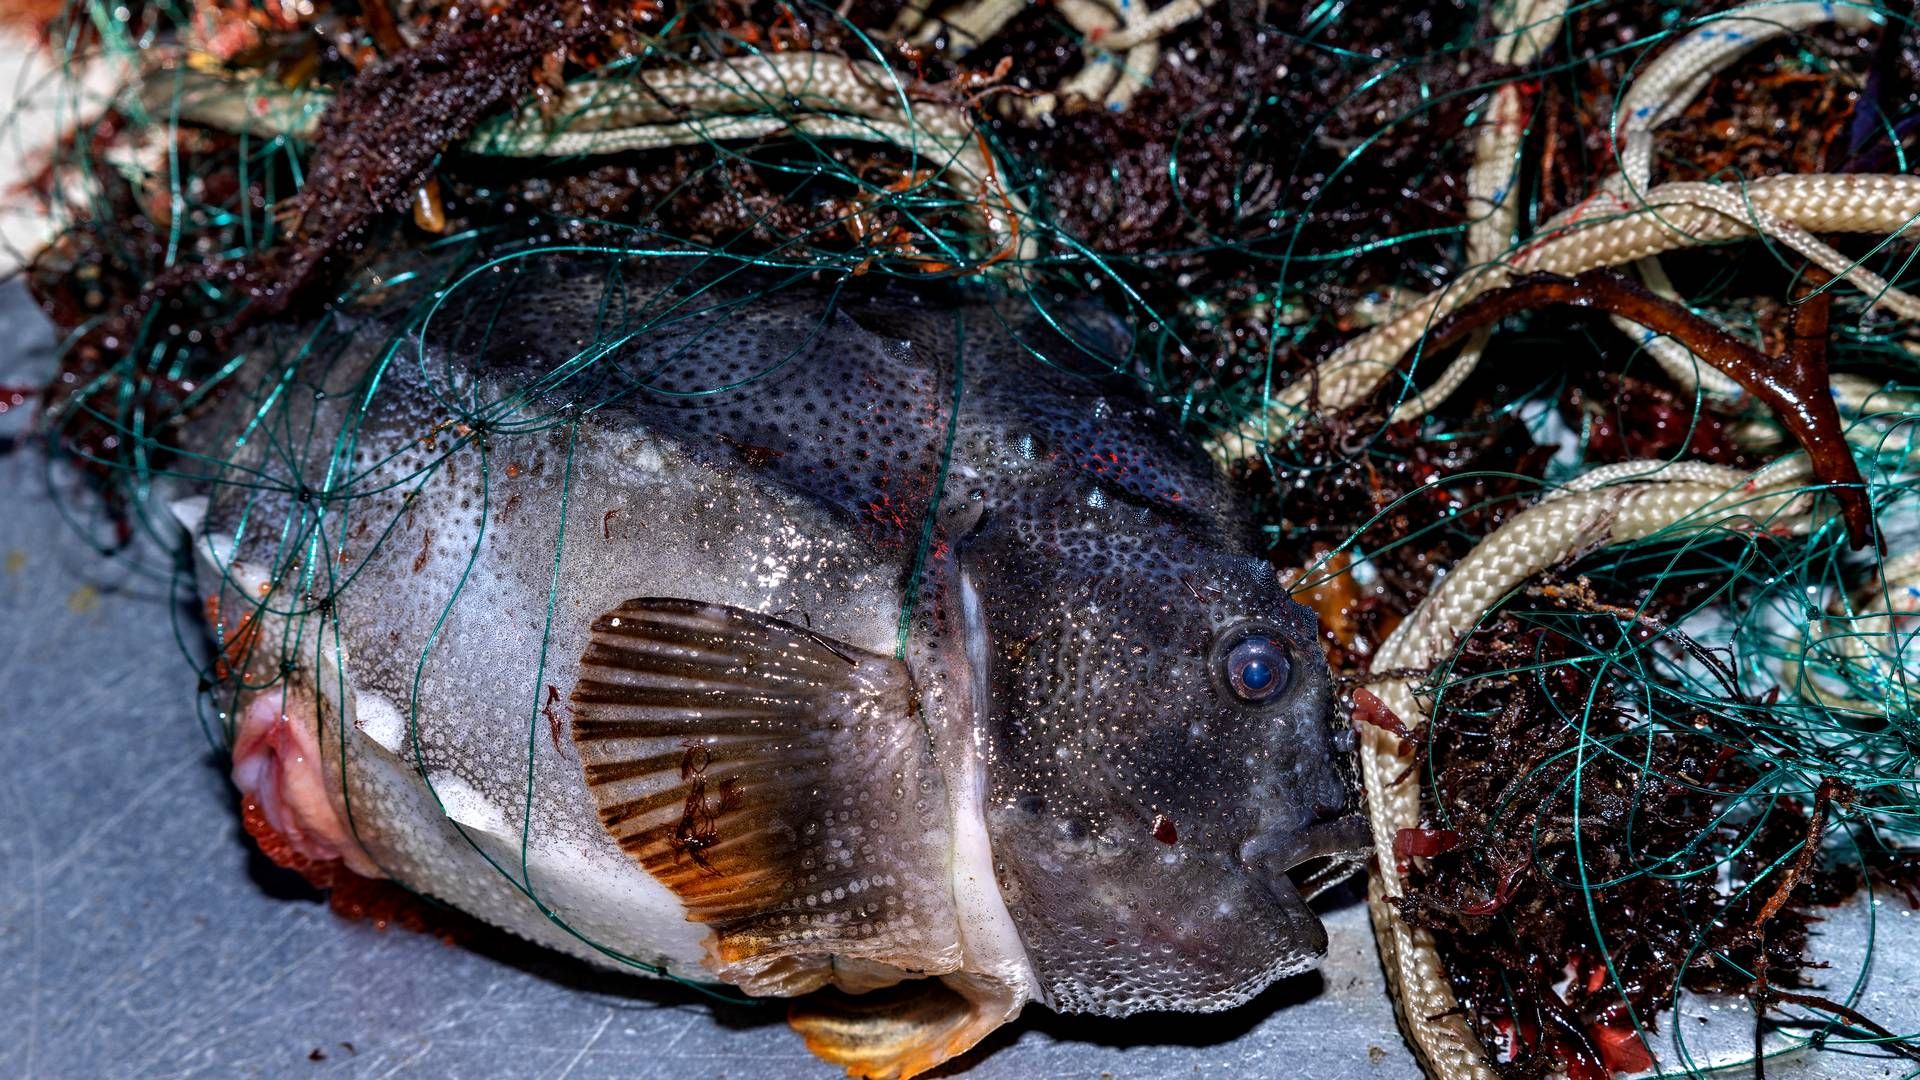 Forskere vil regulere fiskeriet af stenbideren. | Foto: Jacob Ehrbahn